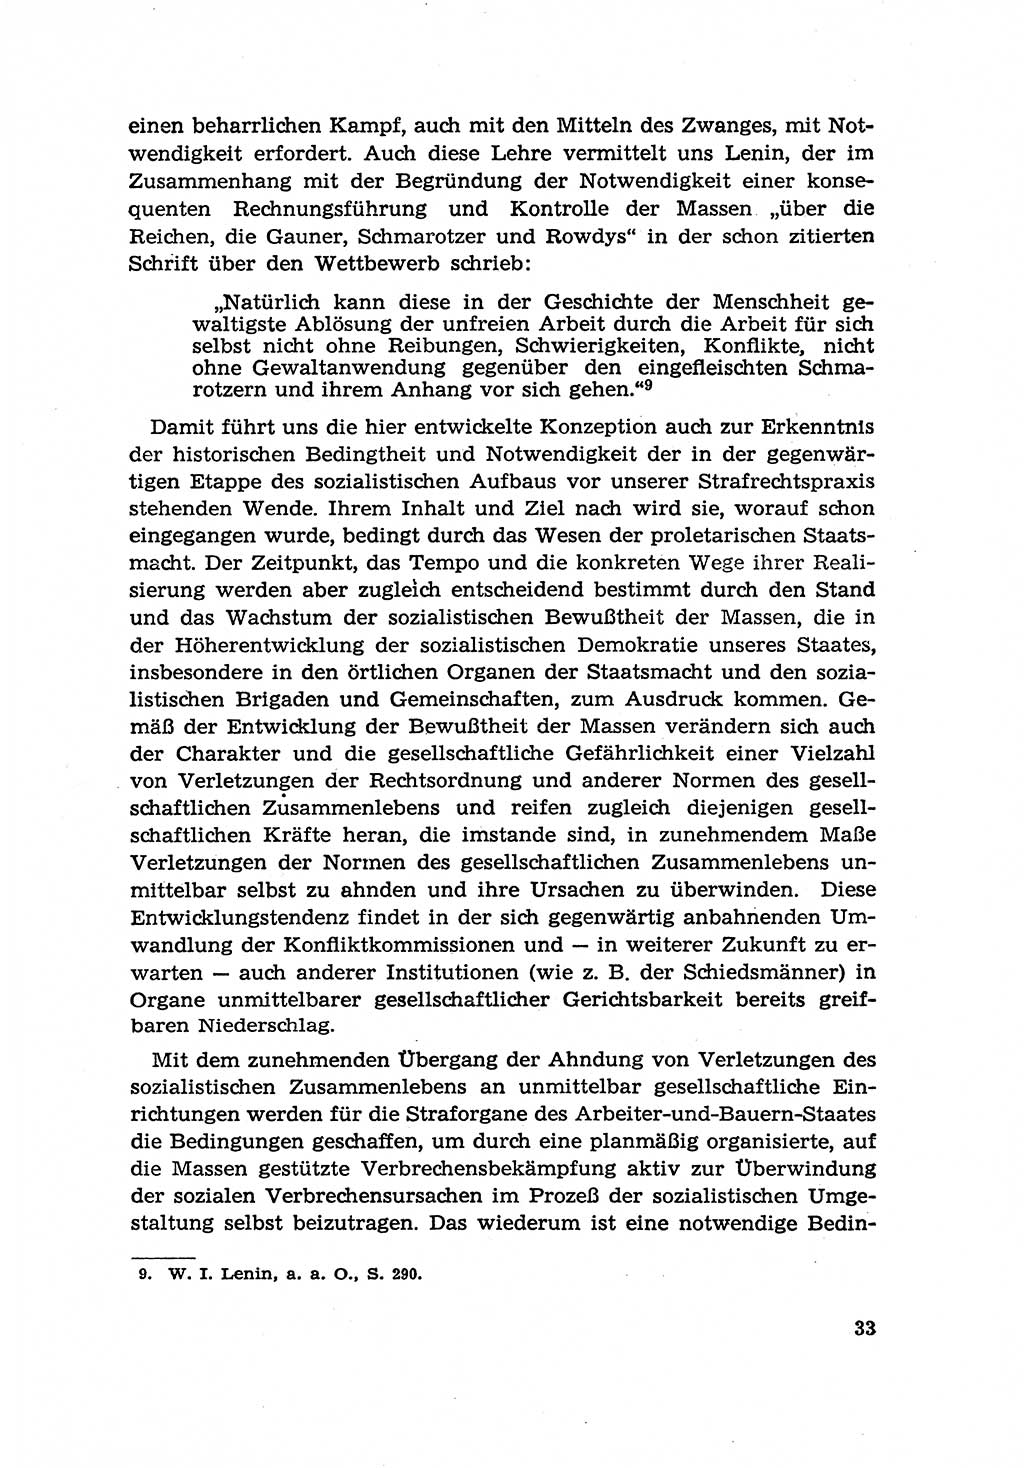 Zur Entwicklung des sozialistischen Strafrechts der Deutschen Demokratischen Republik (DDR) 1960, Seite 33 (Entw. soz. Strafr. DDR 1960, S. 33)